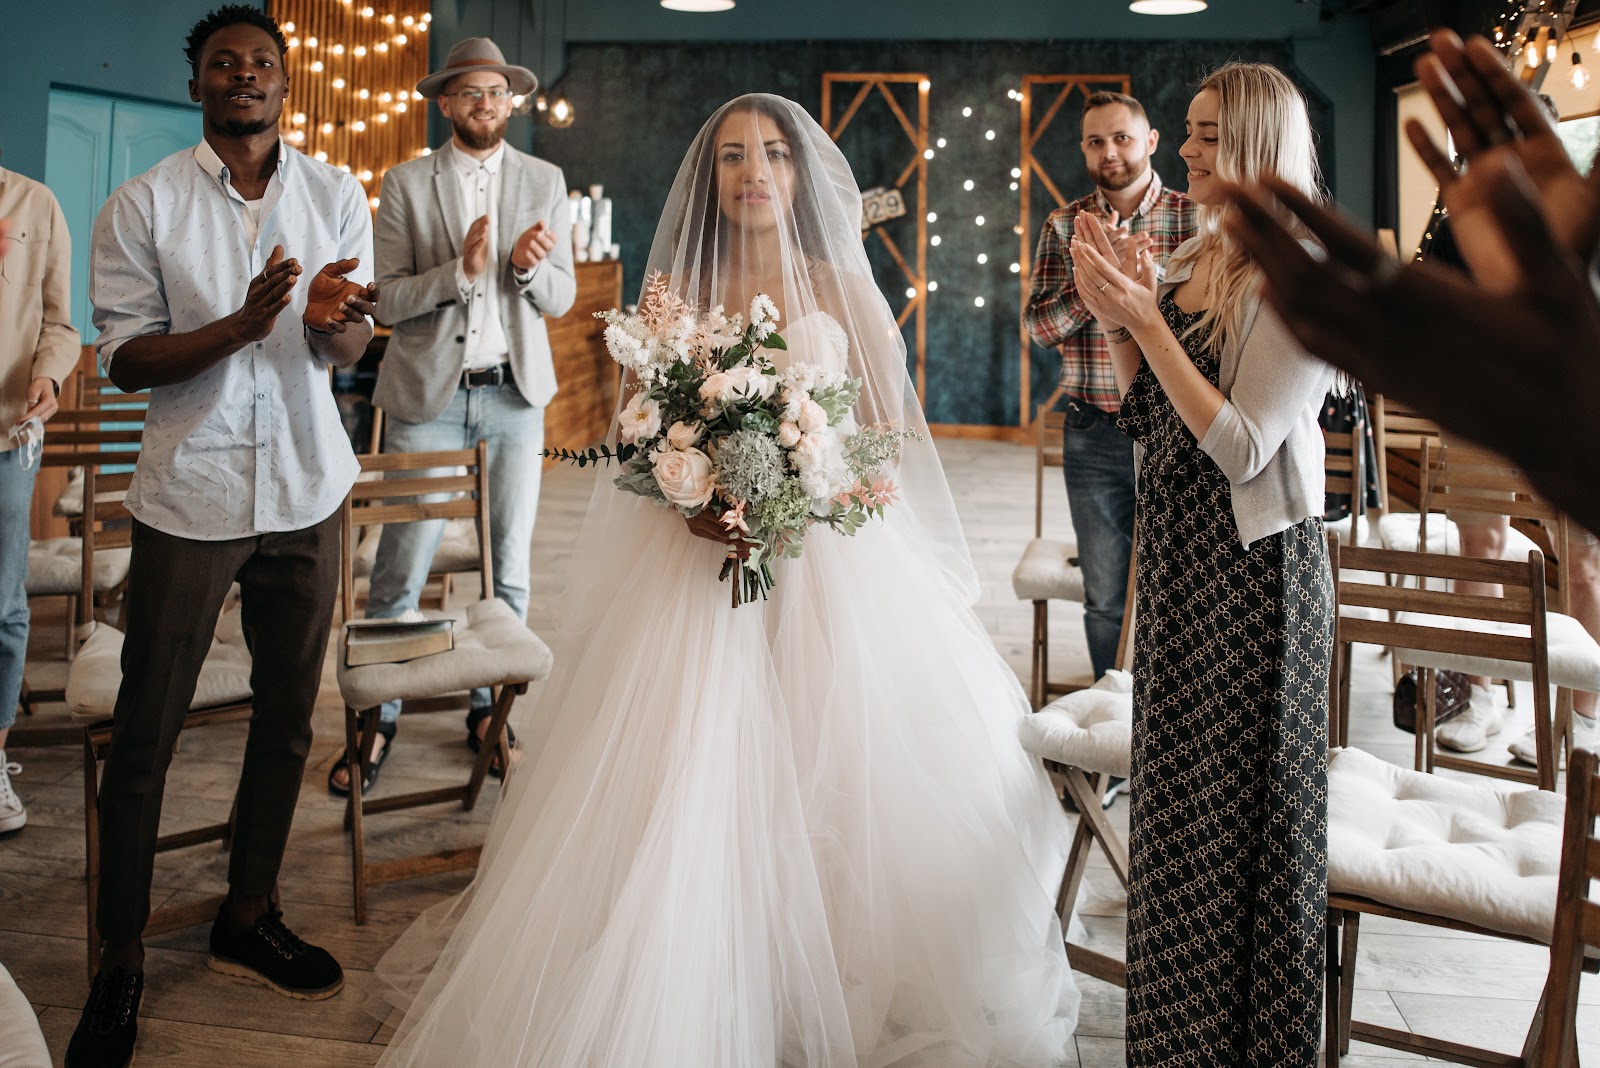 Recepción de los novios en la boda, recuerda que ellos llegan a lo último, y lo puedes complementar con un fotógrafo de bodas para que plasme ese momento para siempre.